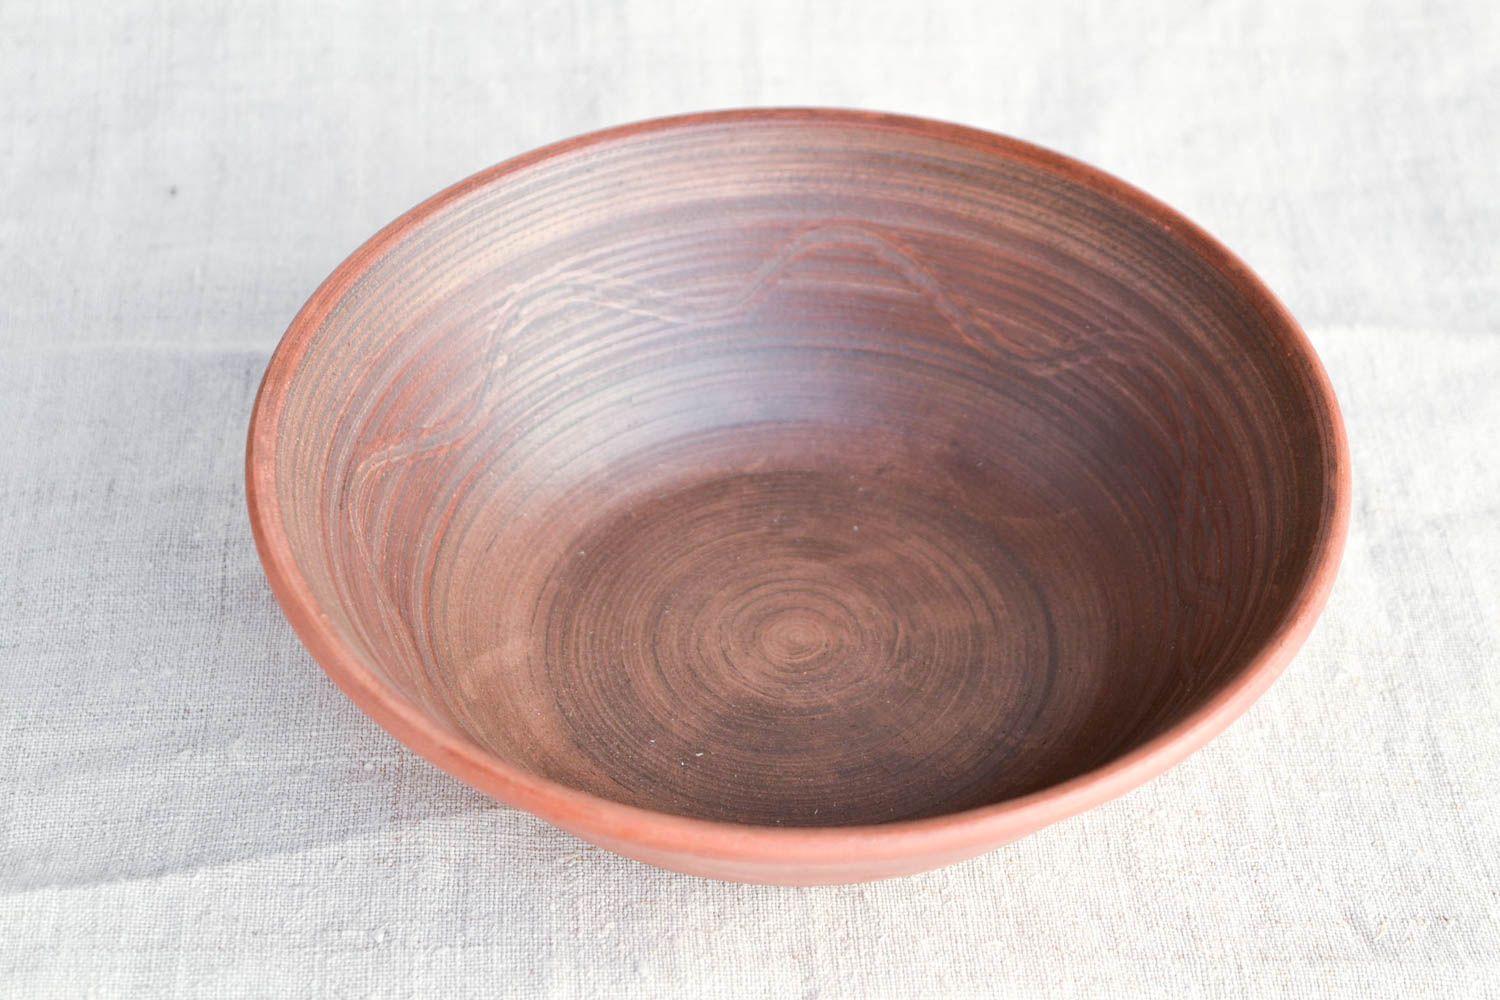 Handmade ceramic bowl ceramic plate stoneware dinnerware kitchen decor photo 4